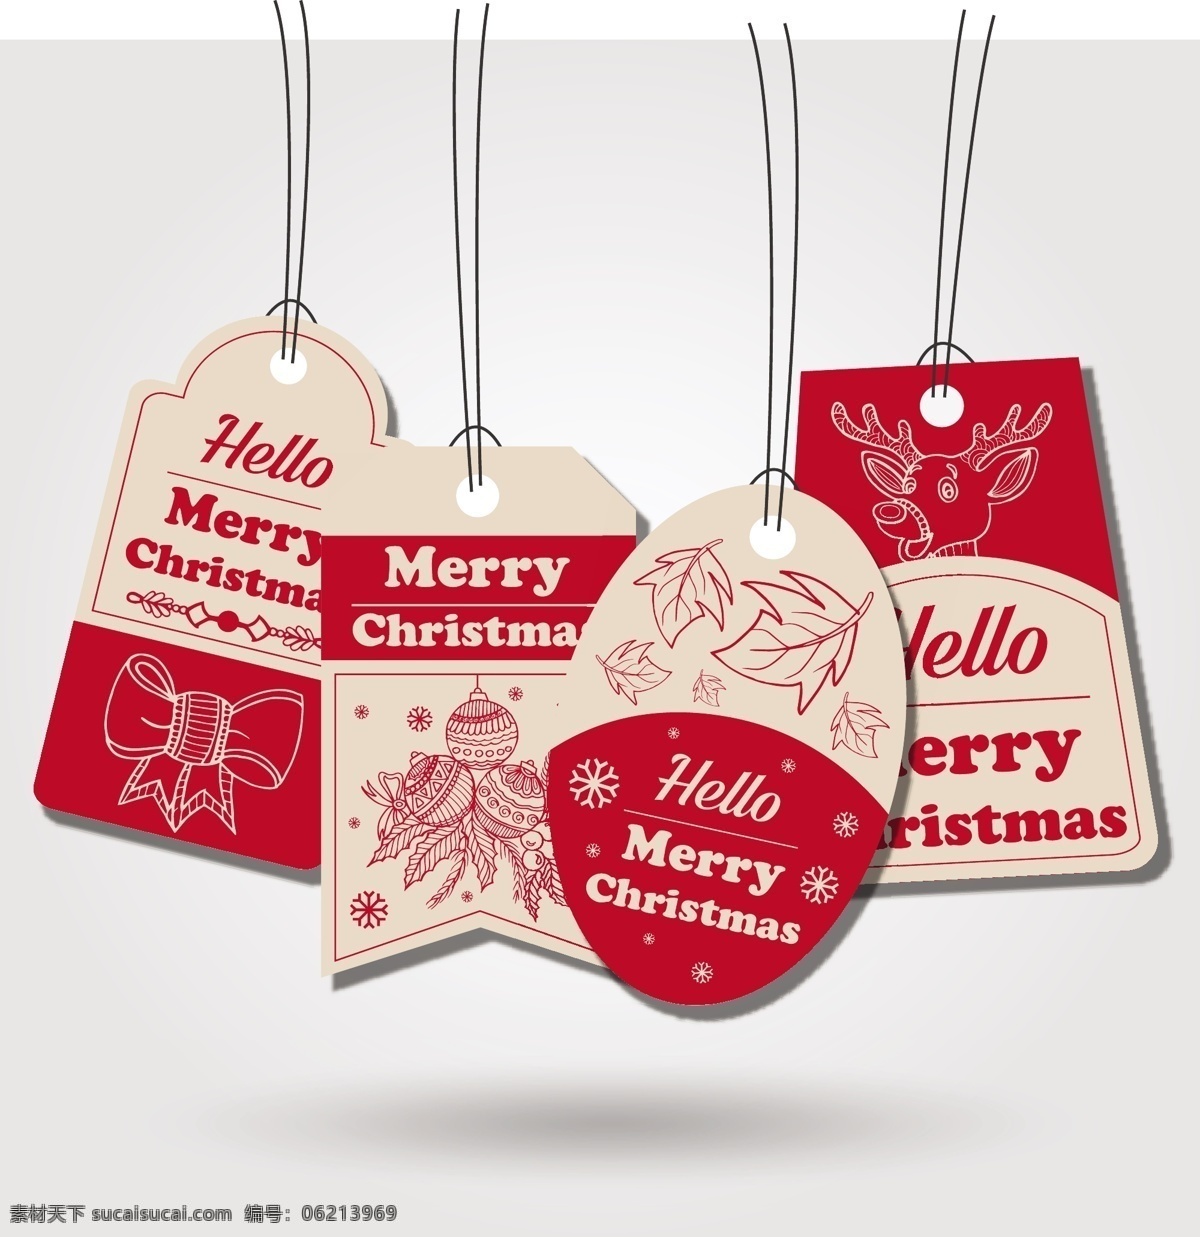 红色 圣诞 元素 吊牌 促销吊牌 节日标签 圆形标签 圣诞庆典 创意标签下载 标签设计 矢量标签 圣诞素材 节日 eps素材 eps标签